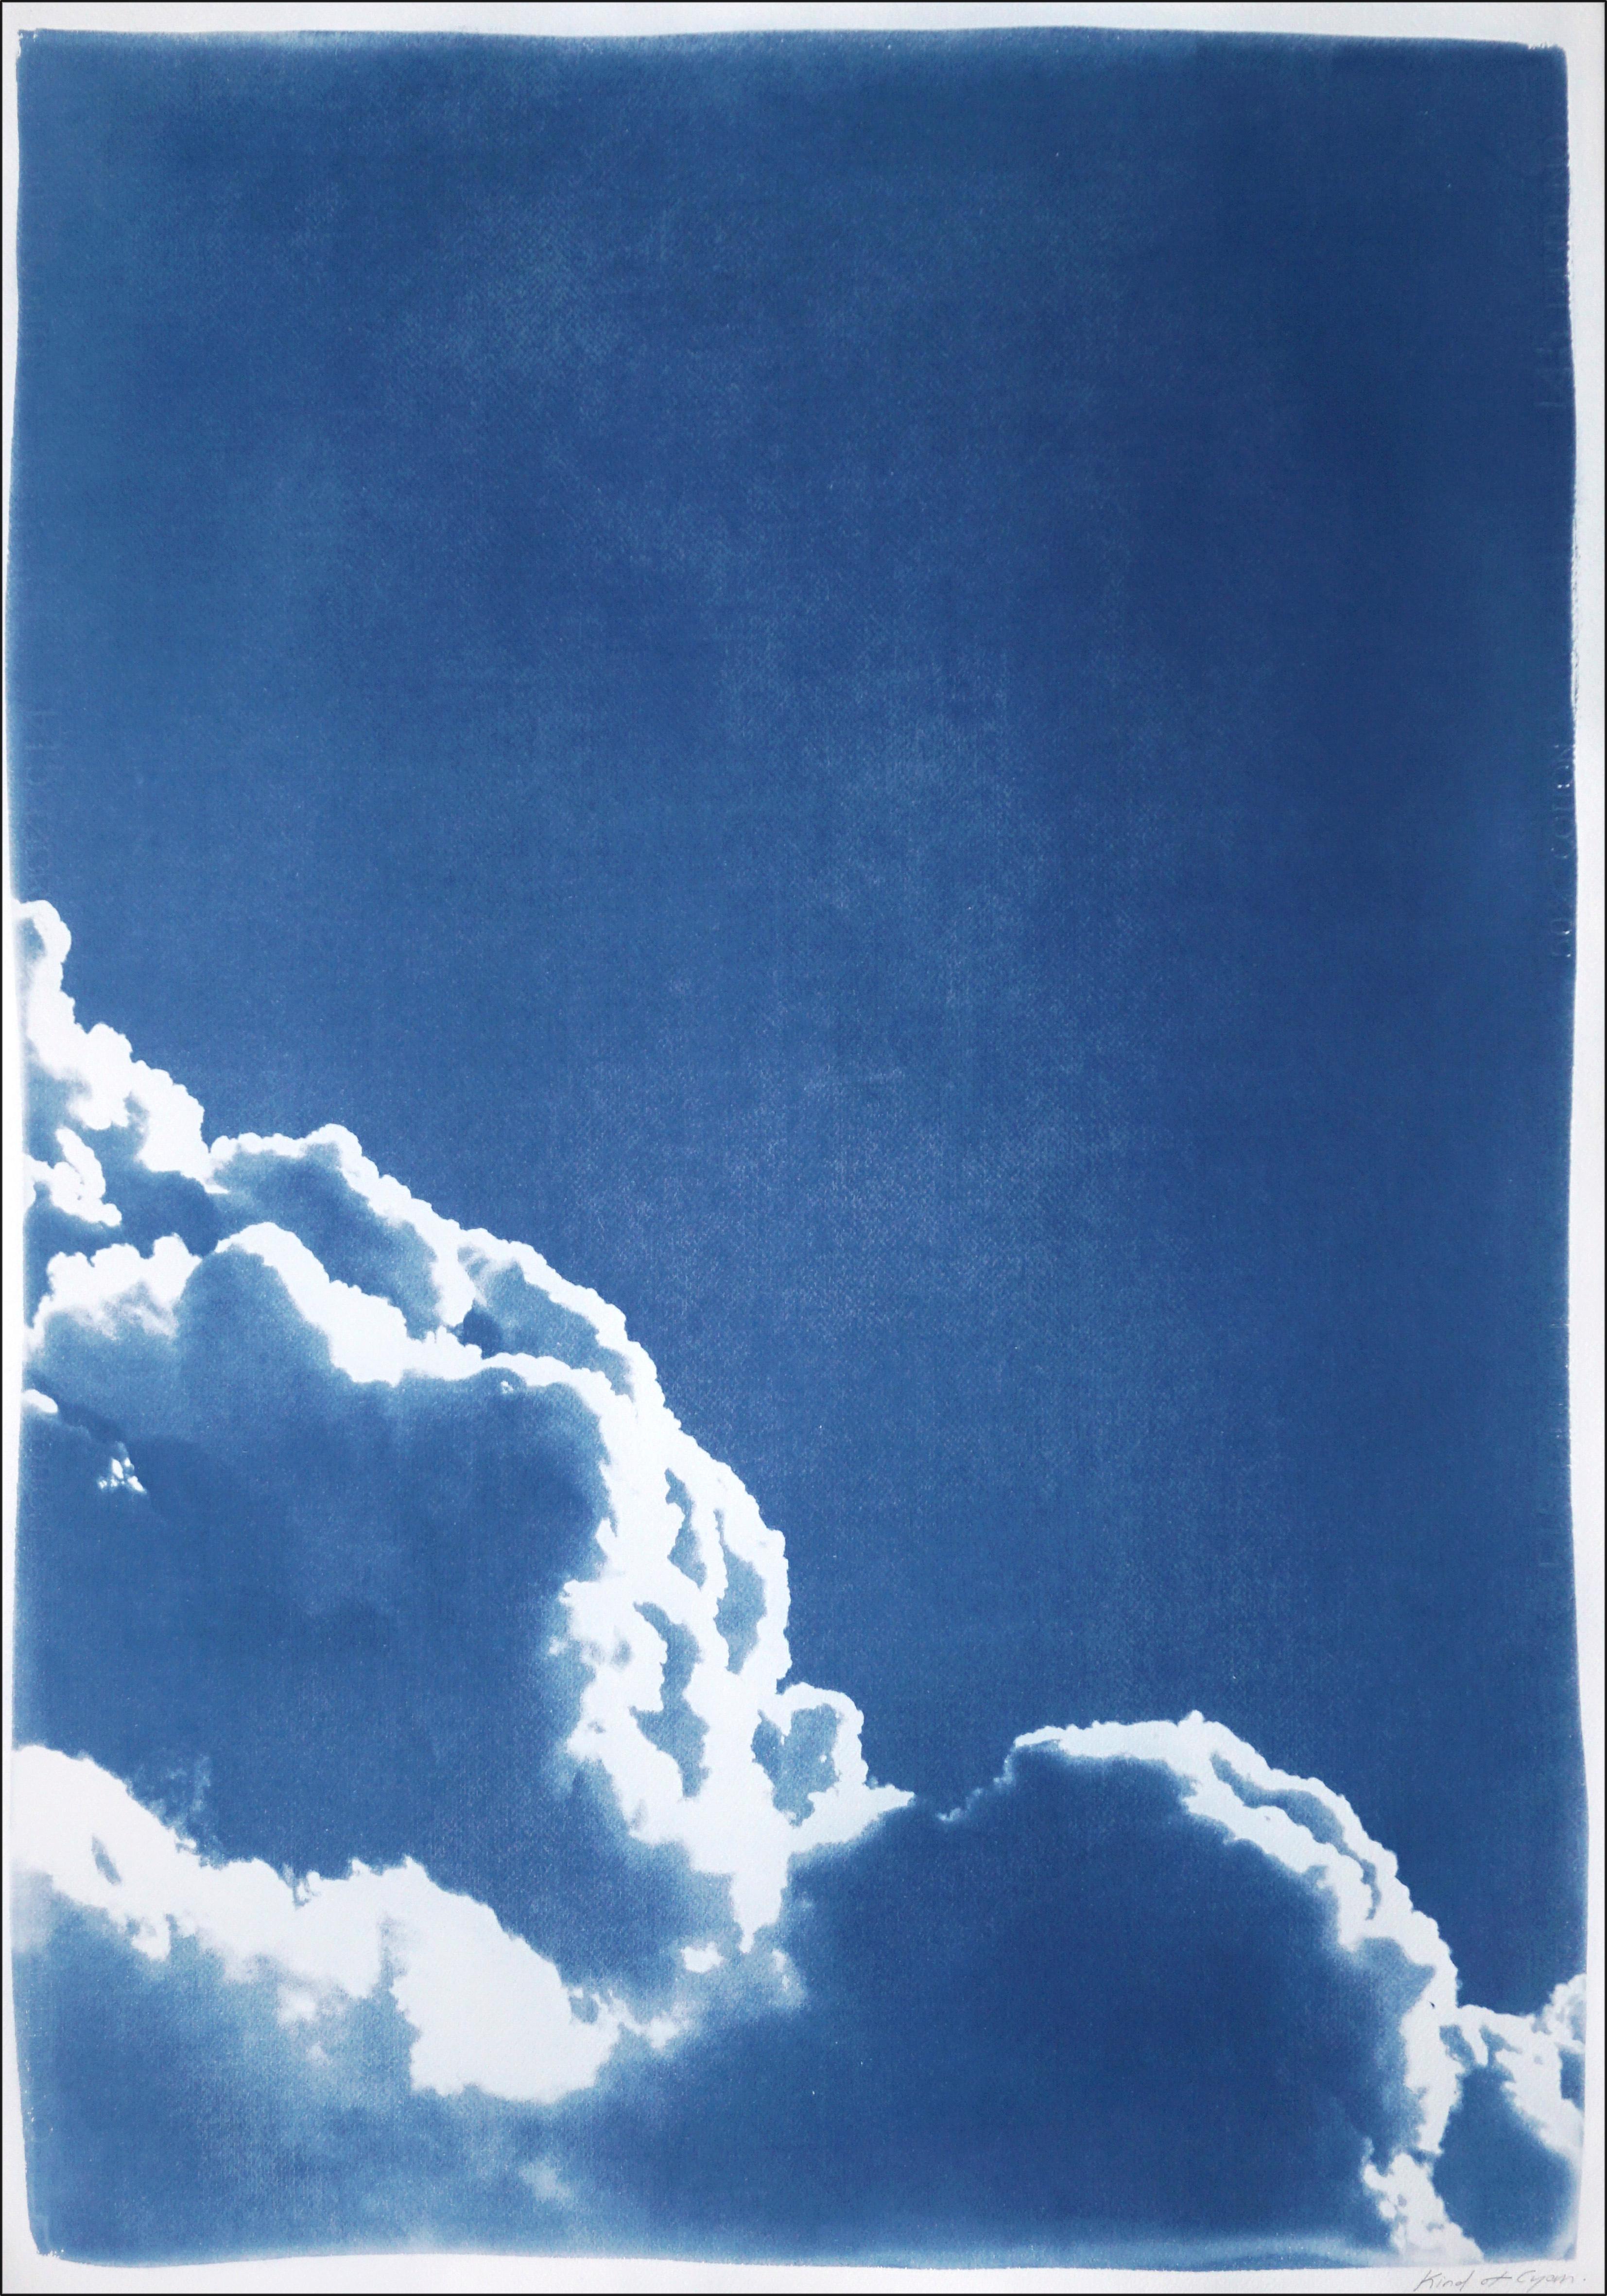 Il s'agit d'un diptyque cyanotype exclusif, imprimé à la main en édition limitée, représentant de magnifiques nuages mousseux.

Détails :
+ Titre : Diptyque de nuages flottants
+ Année : 2023
+ Taille de l'édition : 20
+ Tampon et certificat